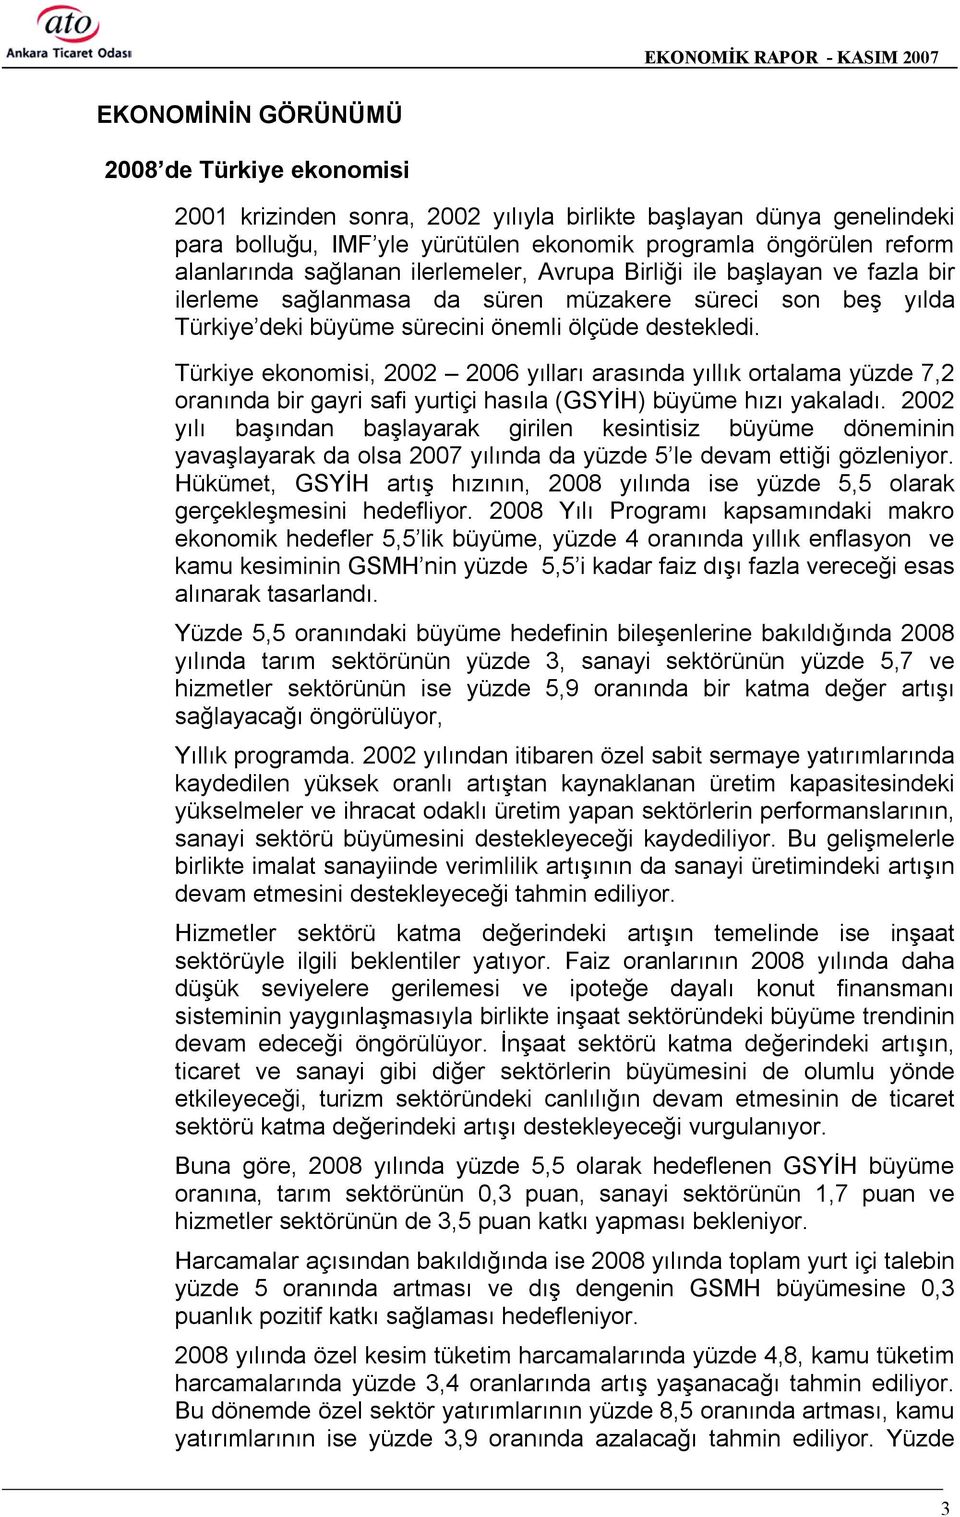 Türkiye ekonomisi, 2002 2006 yõllarõ arasõnda yõllõk ortalama yüzde 7,2 oranõnda bir gayri safi yurtiçi hasõla (GSYİH) büyüme hõzõ yakaladõ.